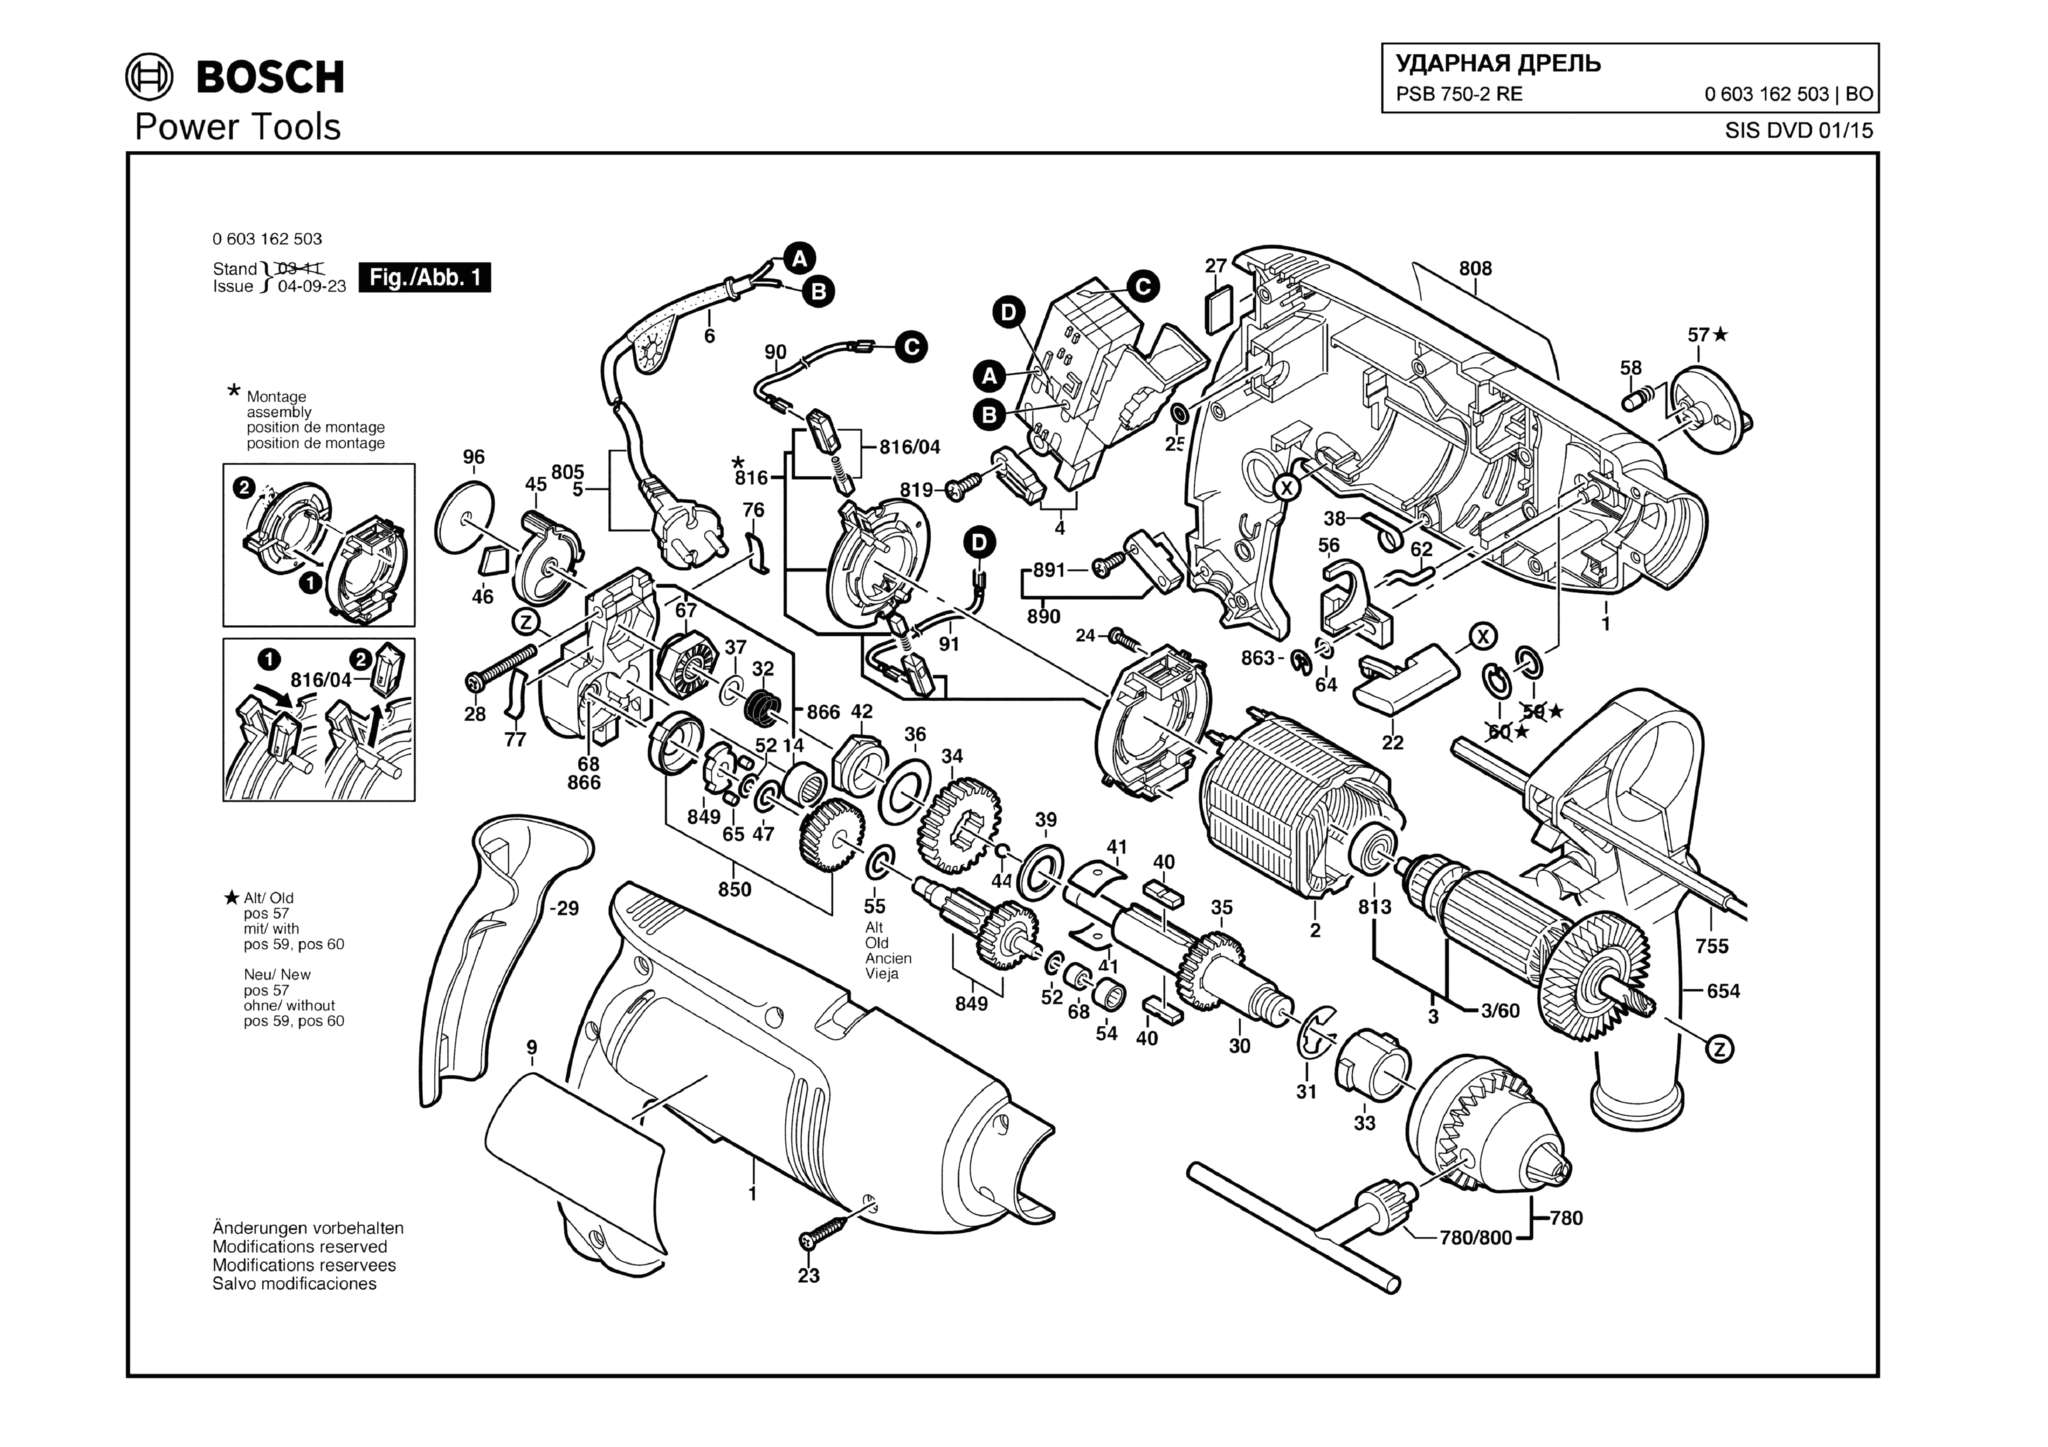 Запчасти, схема и деталировка Bosch PSB 750-2 RE (ТИП 0603162503)